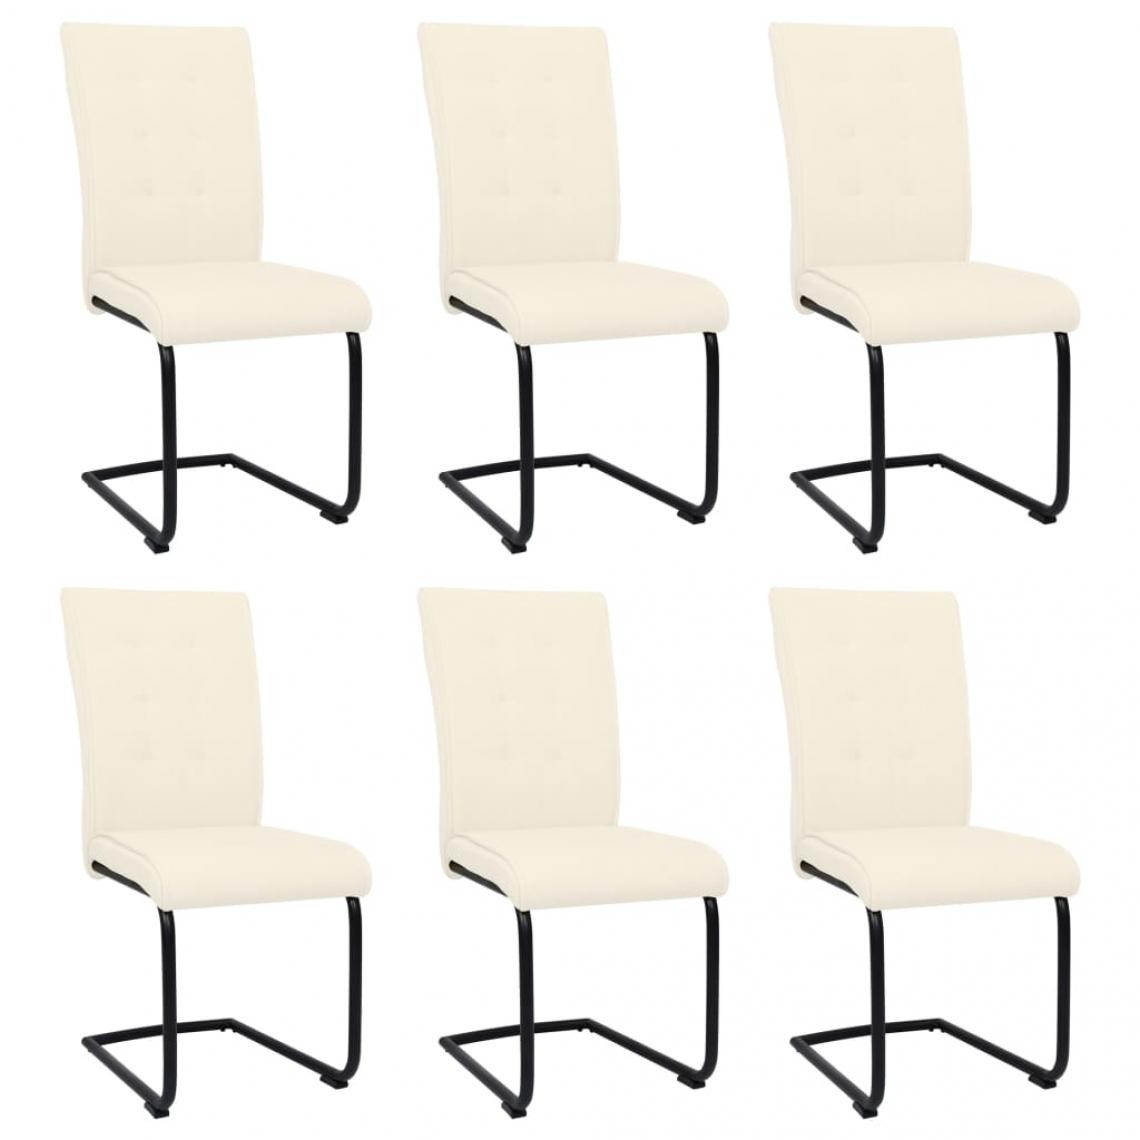 Decoshop26 - Lot de 6 chaises de salle à manger cuisine cantilever design moderne tissu crème CDS022267 - Chaises